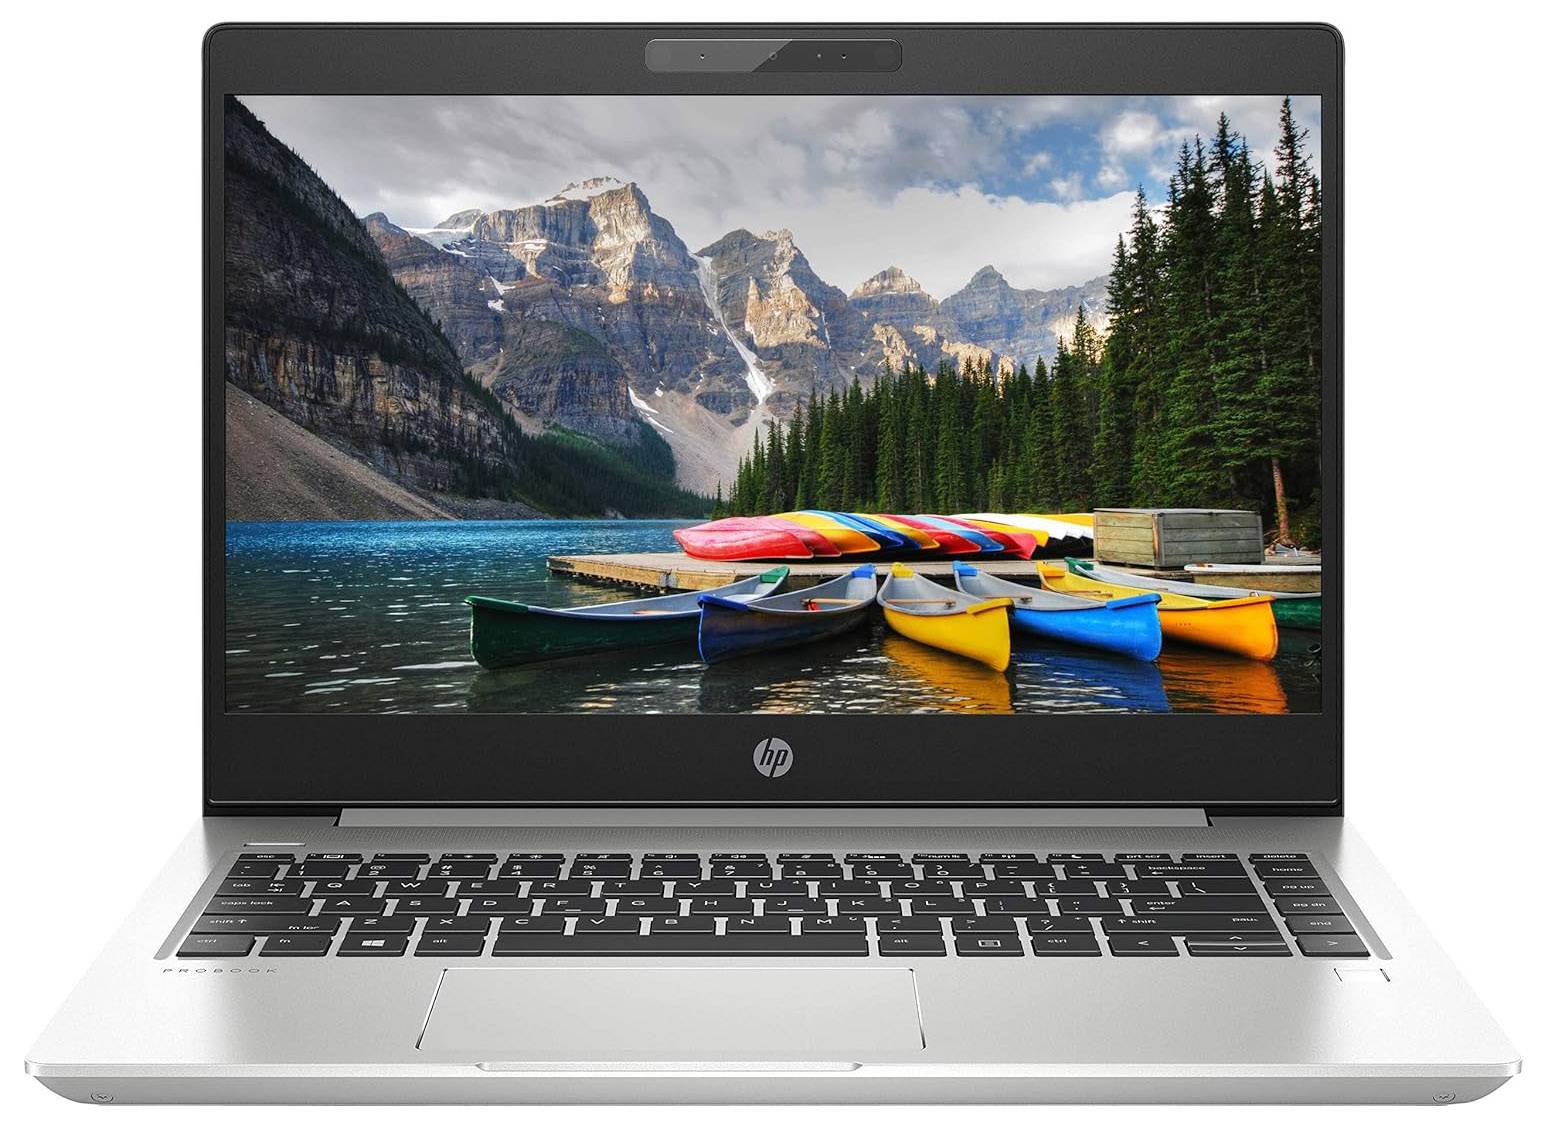 لپتاپ اچ پی استوک (HP) | ProBook 440 G6 | avincomp.com